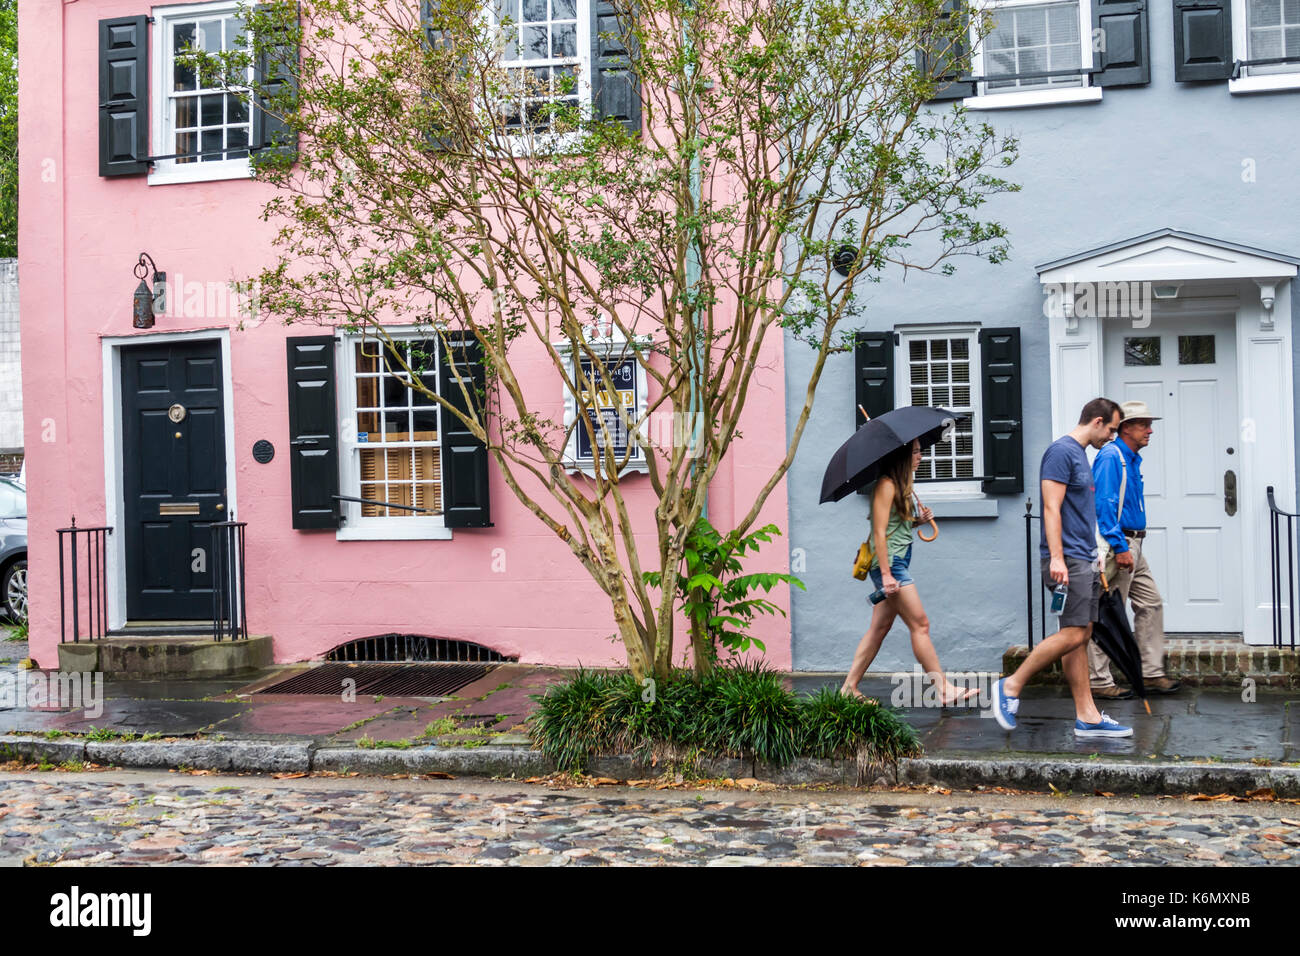 Charleston South Carolina, historische Innenstadt, Chalmers Street, Häuser, Kopfsteinpflaster, Gebäude, Besucher reisen Reise touristischer Tourismus Wahrzeichen landm Stockfoto